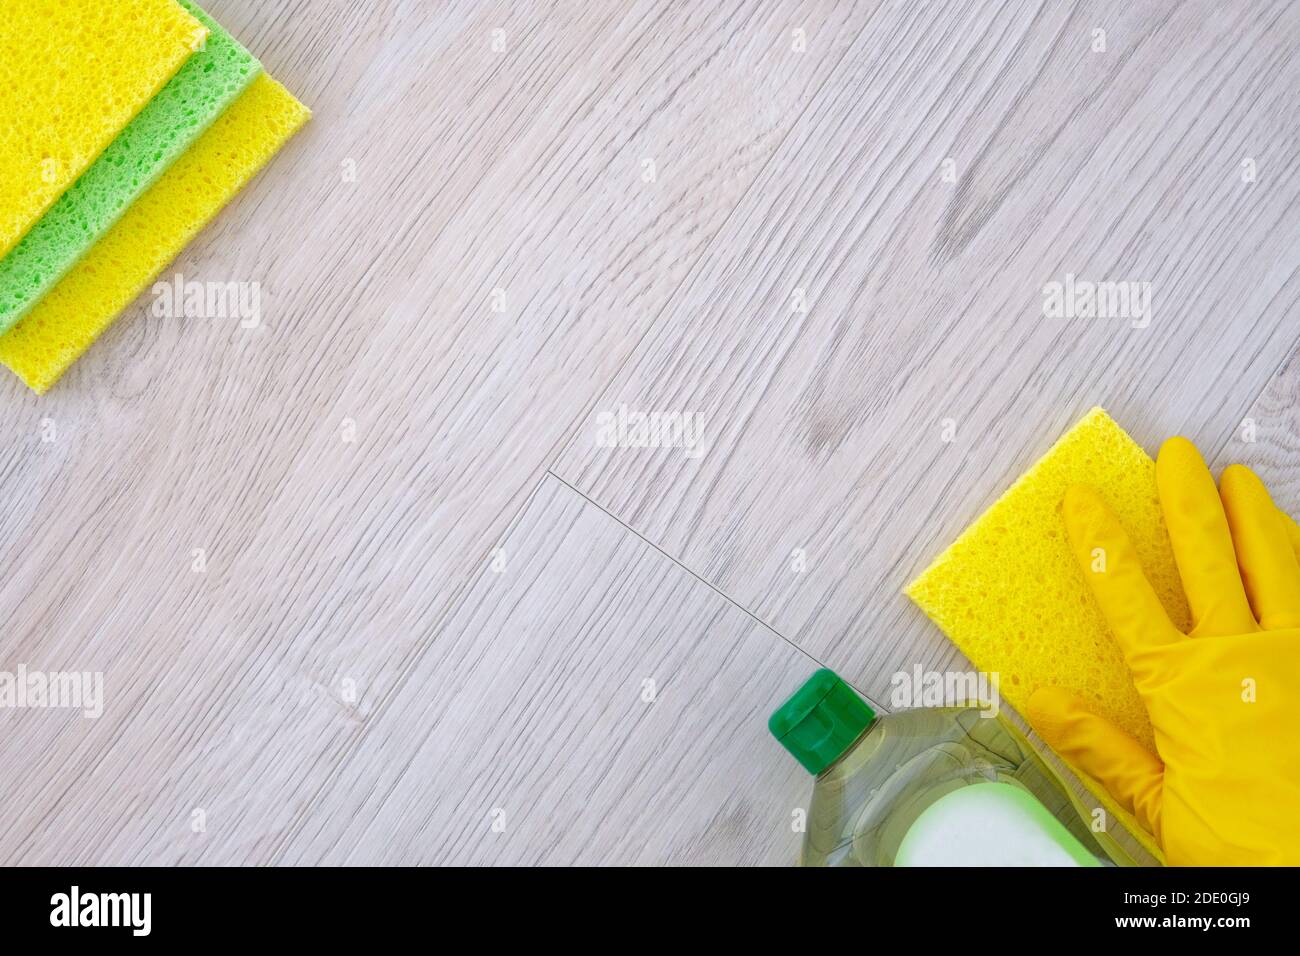 Reinigungsdienstkonzept. Hand in gelben Gummi-Schutzhandschuh mit Mikrofasertuch. Flache Reinigungsprodukte, Kopierplatz. Stockfoto